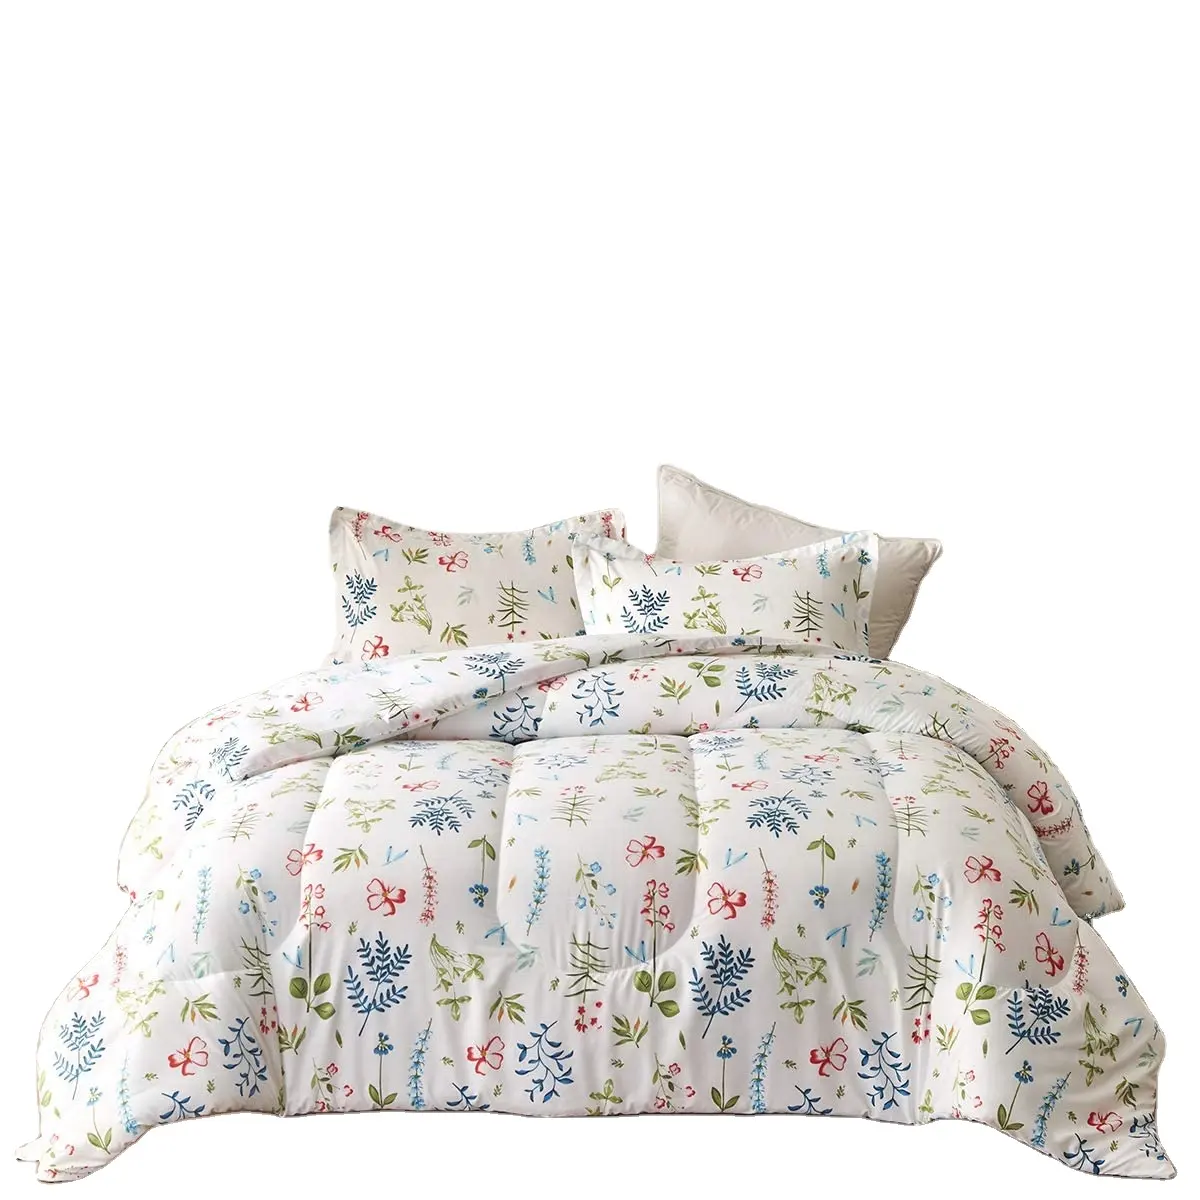 Lovely comforter sets wholesale comforter sets bedding brand bed sheet and comforter sets